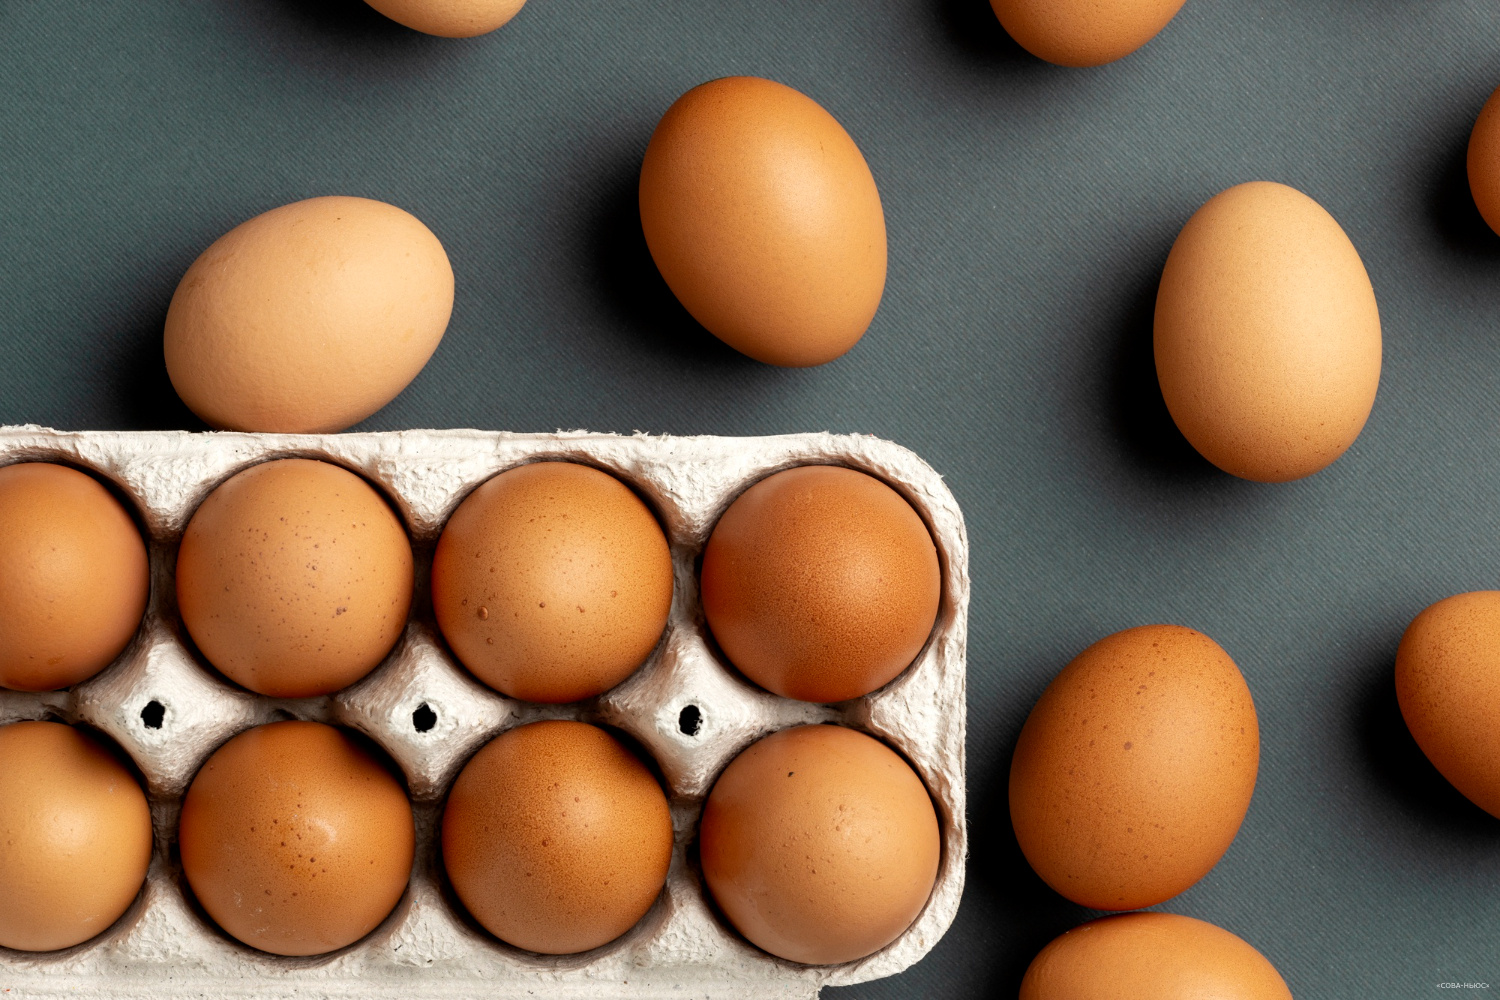 Российские регионы вводят ограничения на покупку яиц в регионах РФ из-за роста цен